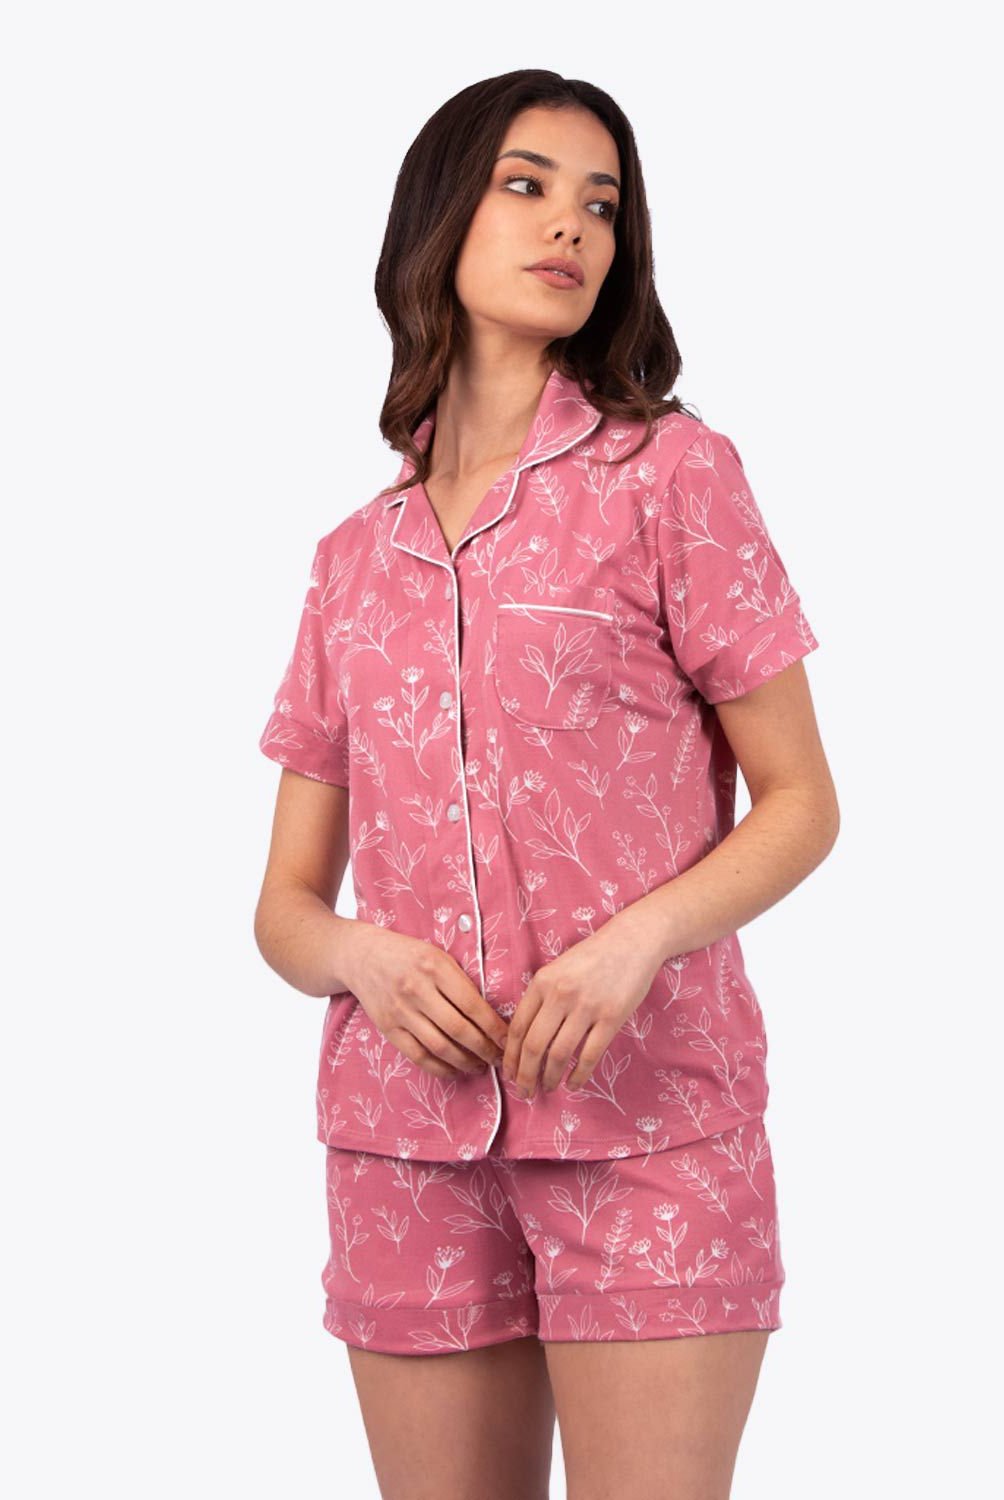 LANNA SLEEPWEAR - Pijama Mujer Lanna